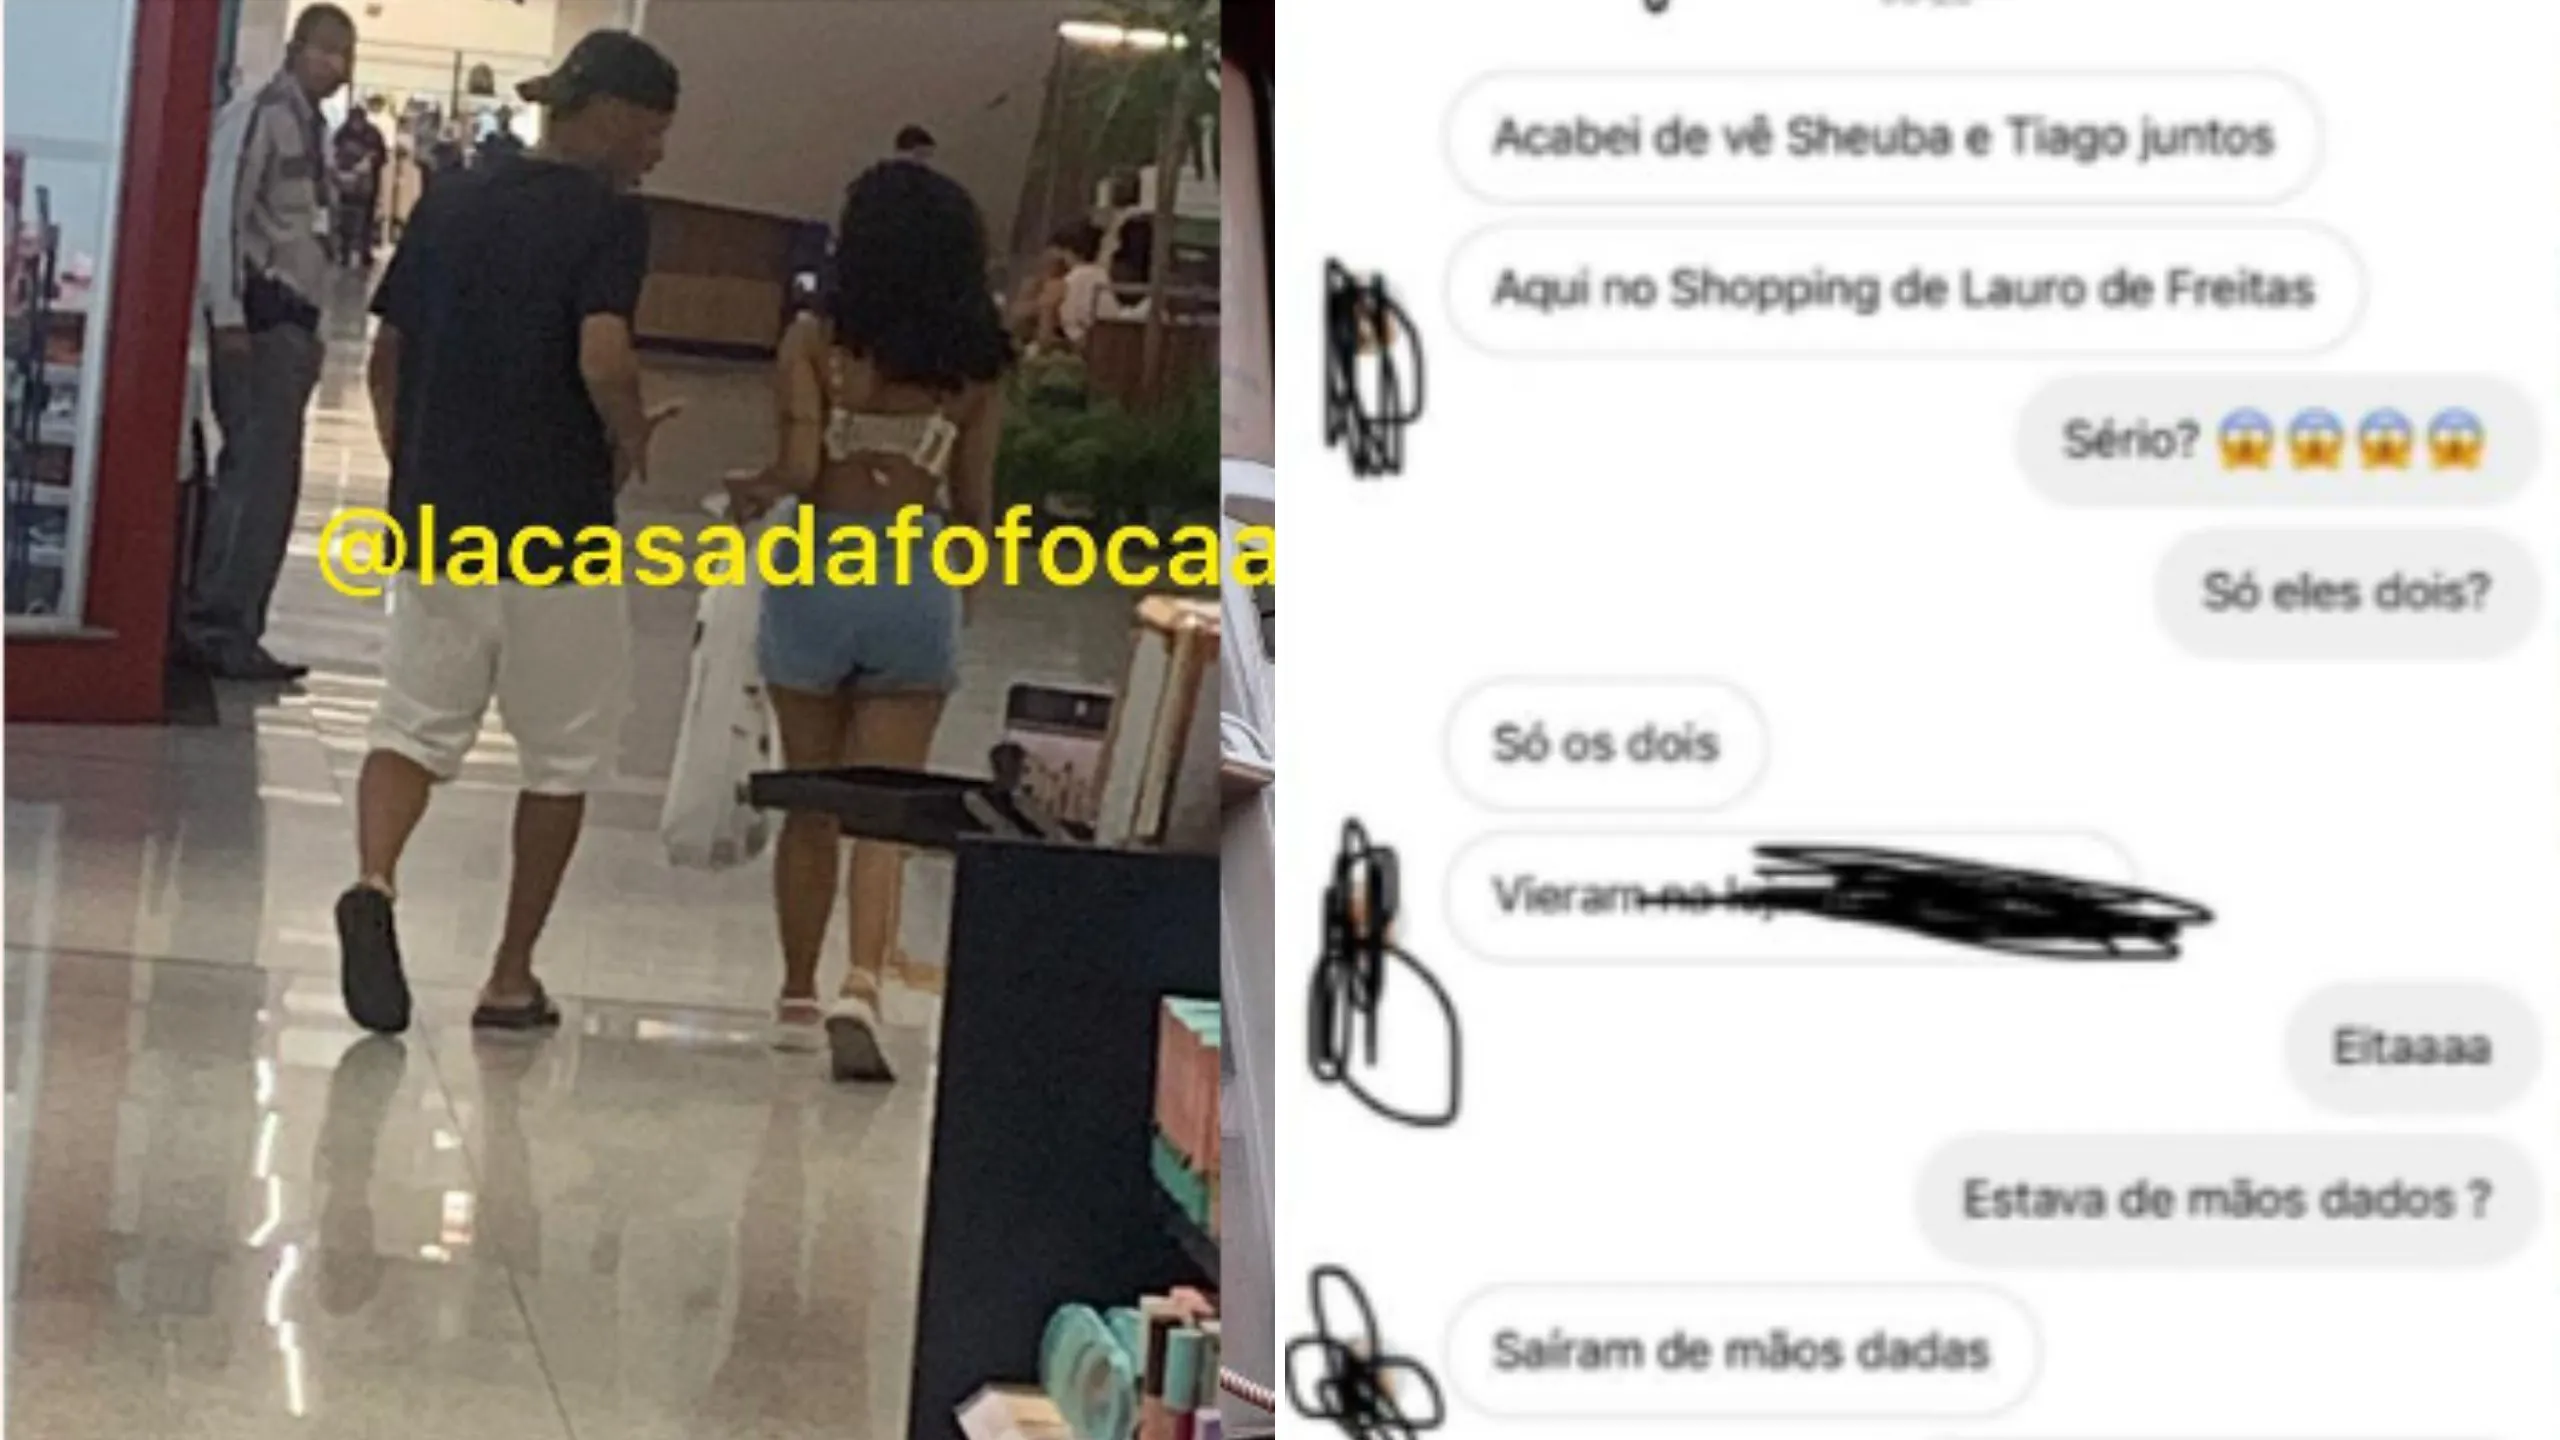 Sheuba e Tiago Souza são vistos juntos em shopping